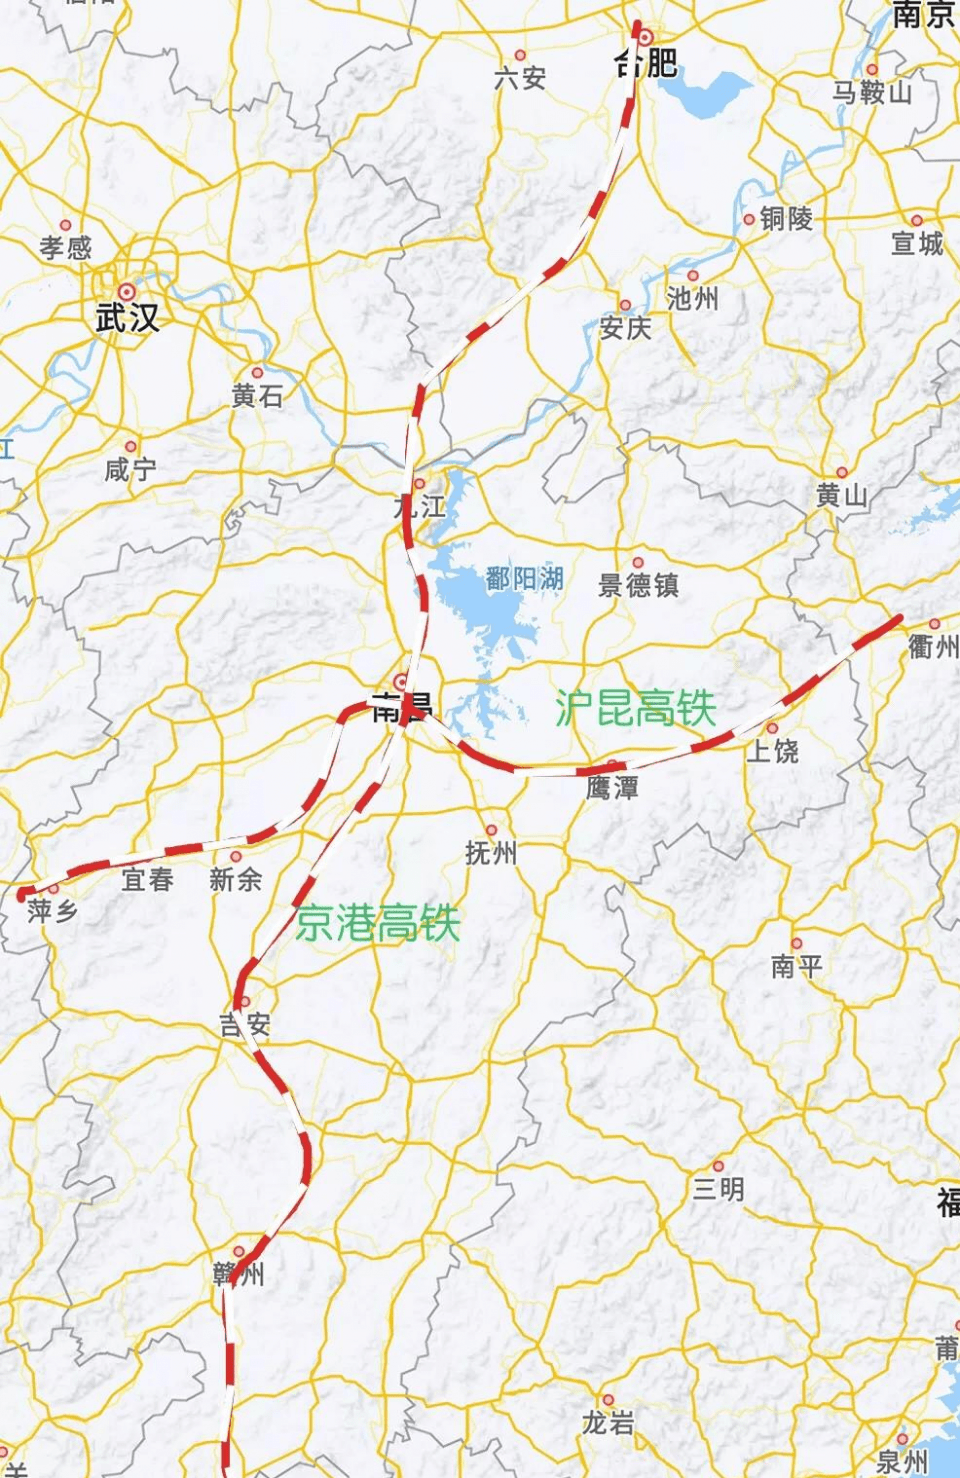 并没有直达珠江口西岸各大城市以及广州,虽然深圳至广州有高铁线路